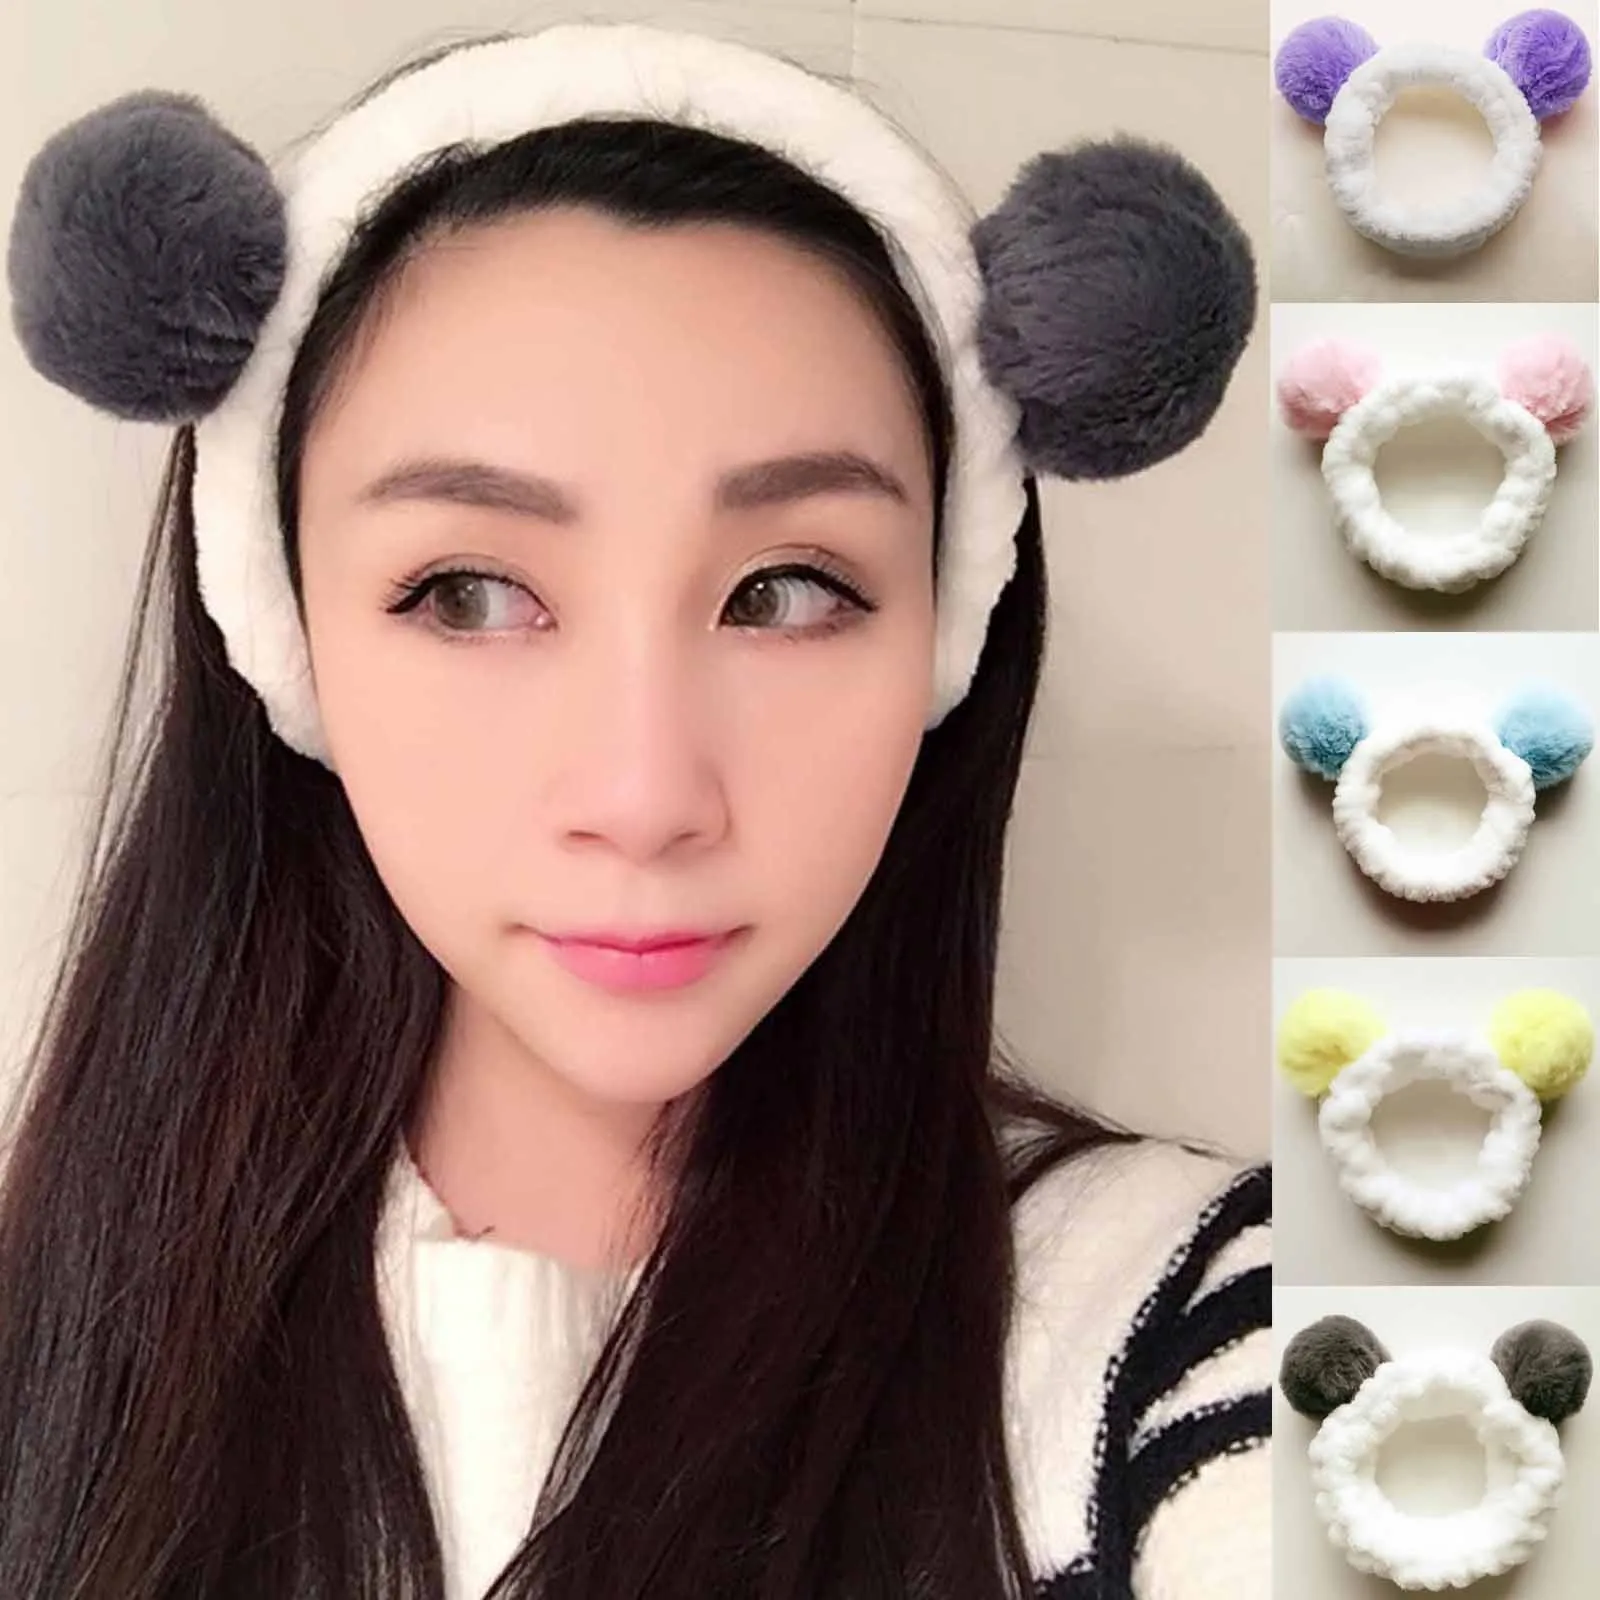 Panda Ear Shower Head Wrap Makeup Hair Band Elastic Headband Hair Accessories 